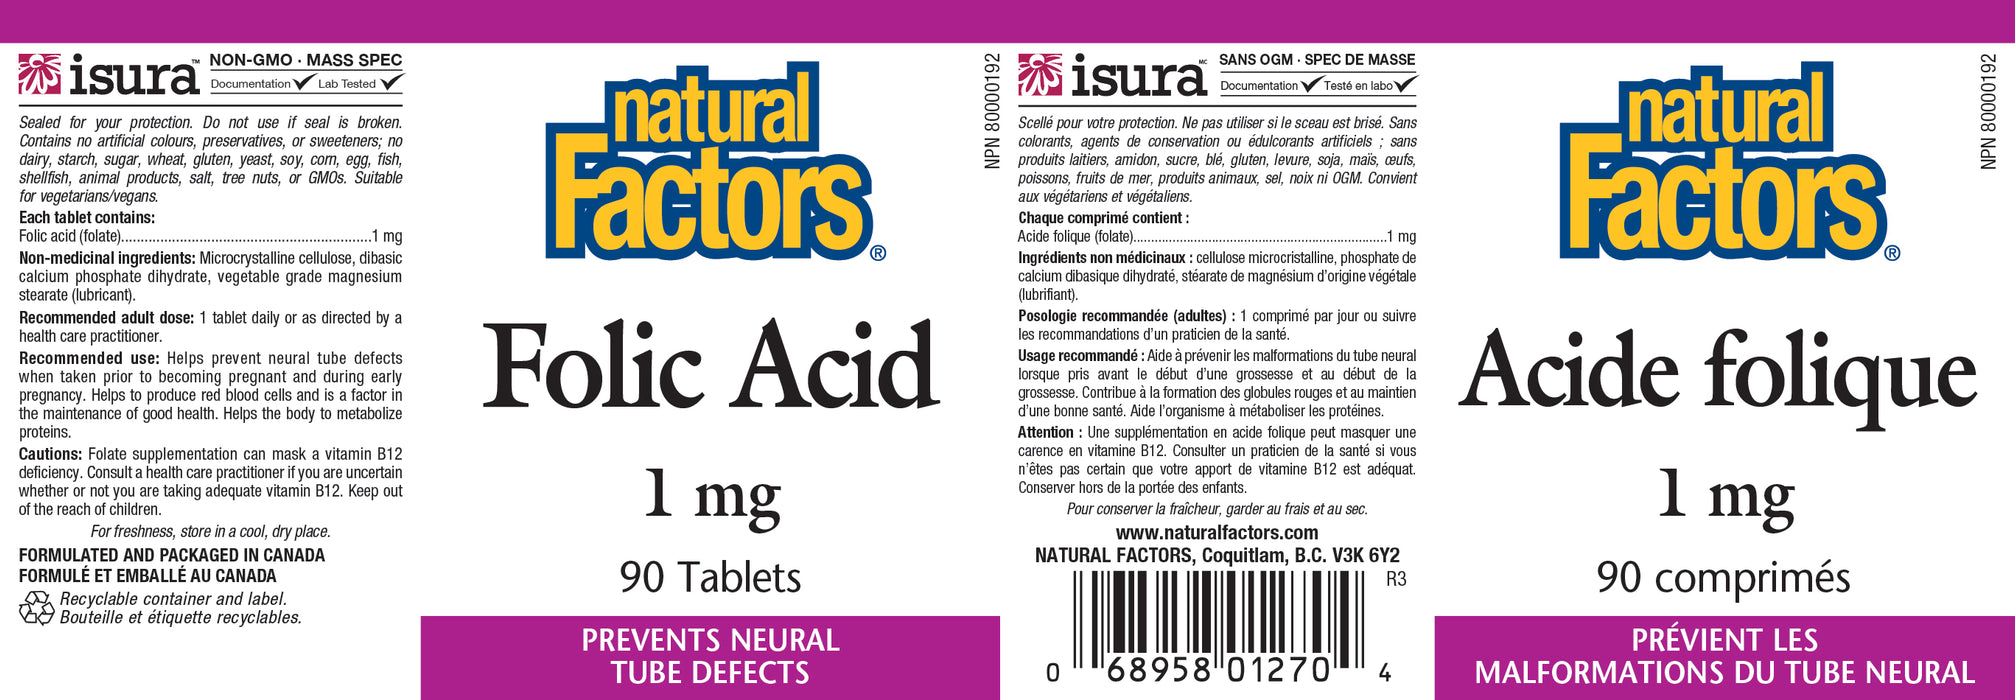 Natural Factors Folic Acid 1mg 90 Tablets